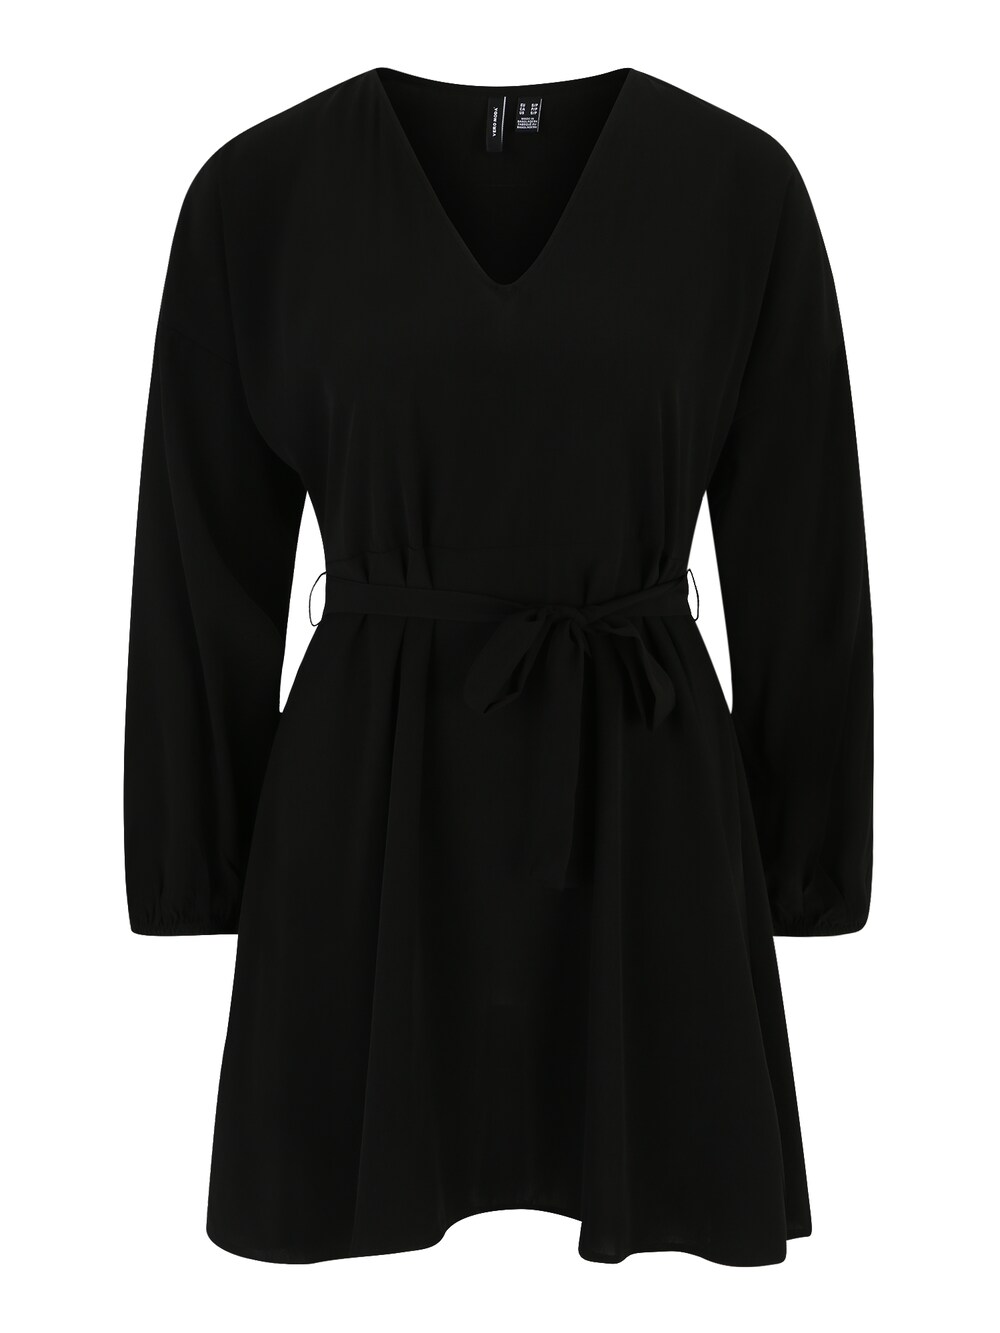 vero moda джемпер толстовка женский цвет черный размер xs Платье Vero Moda NAJA, черный